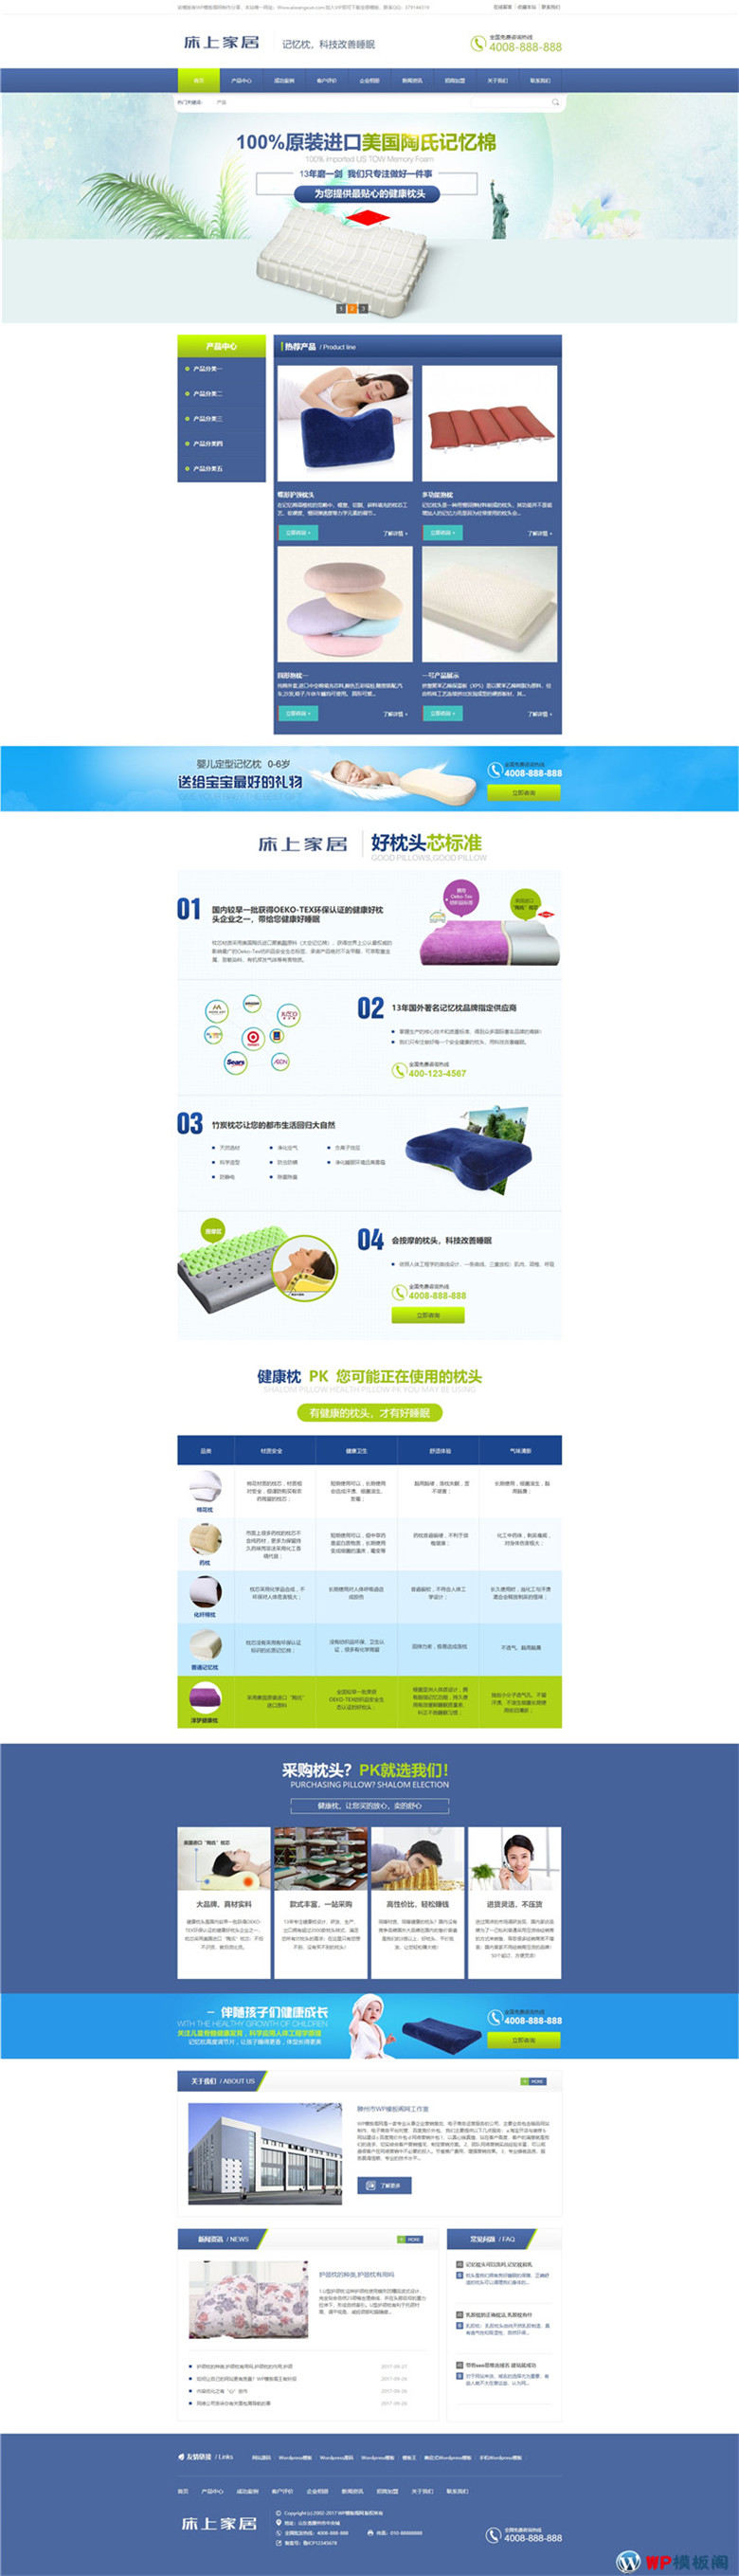 营销型记忆枕头床上用品下载网站WordPress模板含手机站演示图